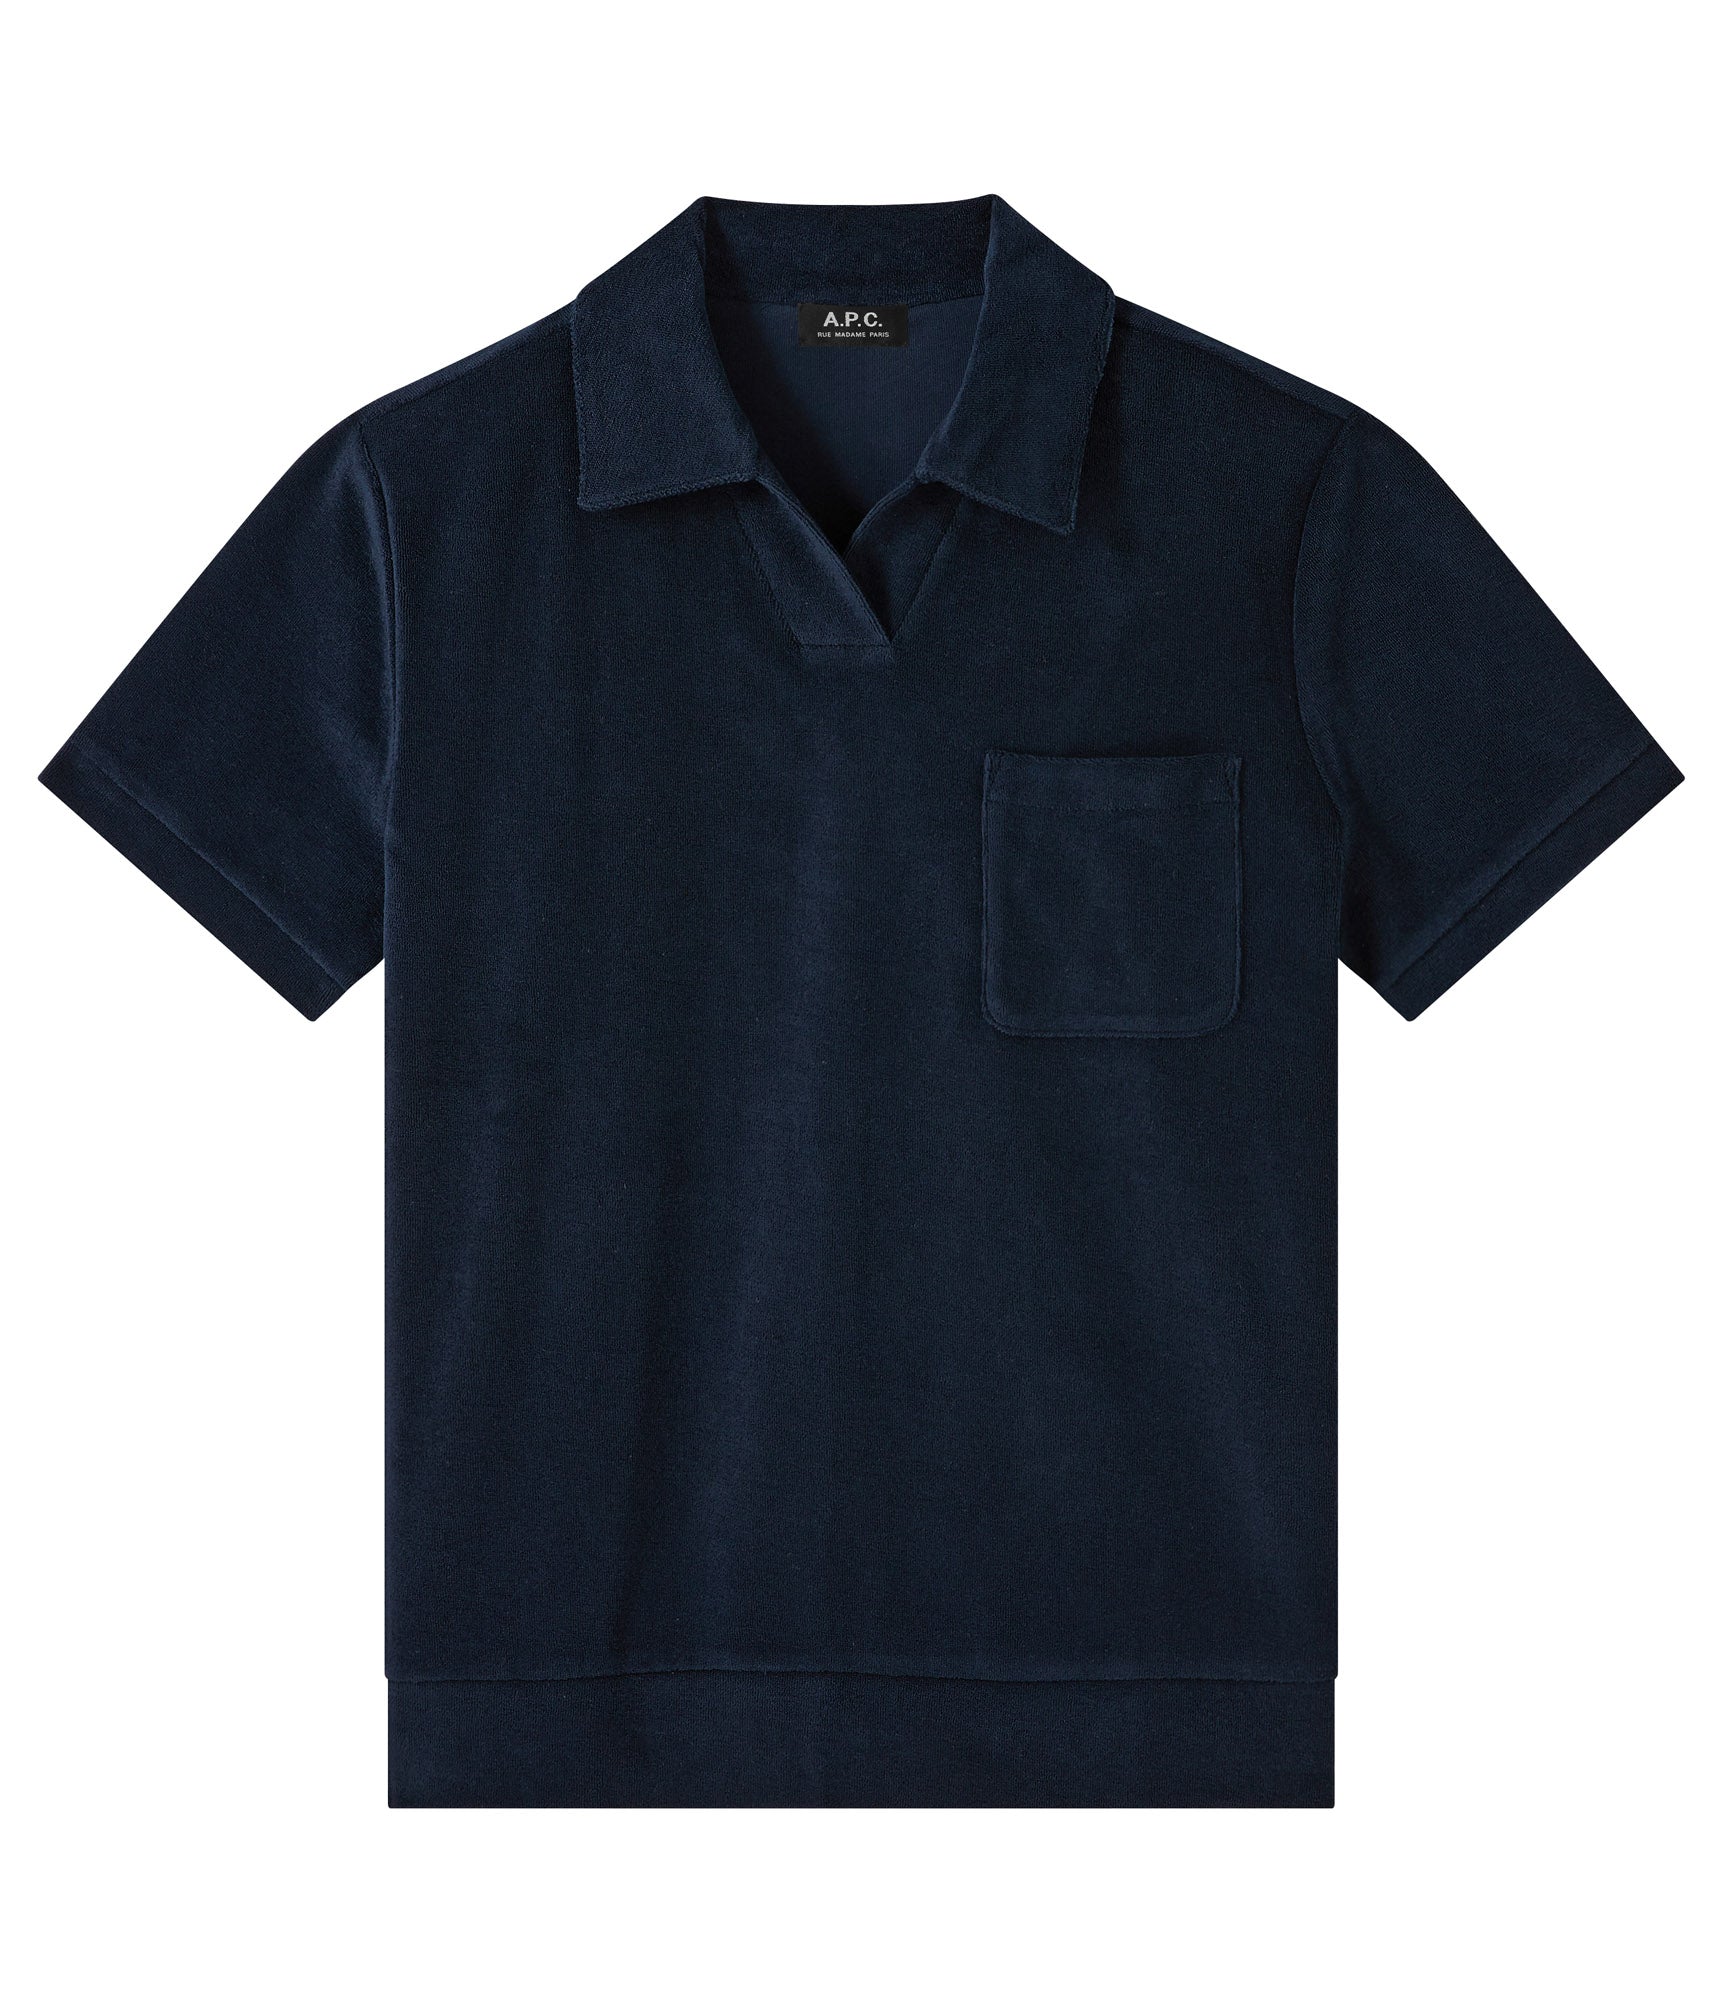 Agustino polo shirt | Organic cotton polo shirt in terry fleece